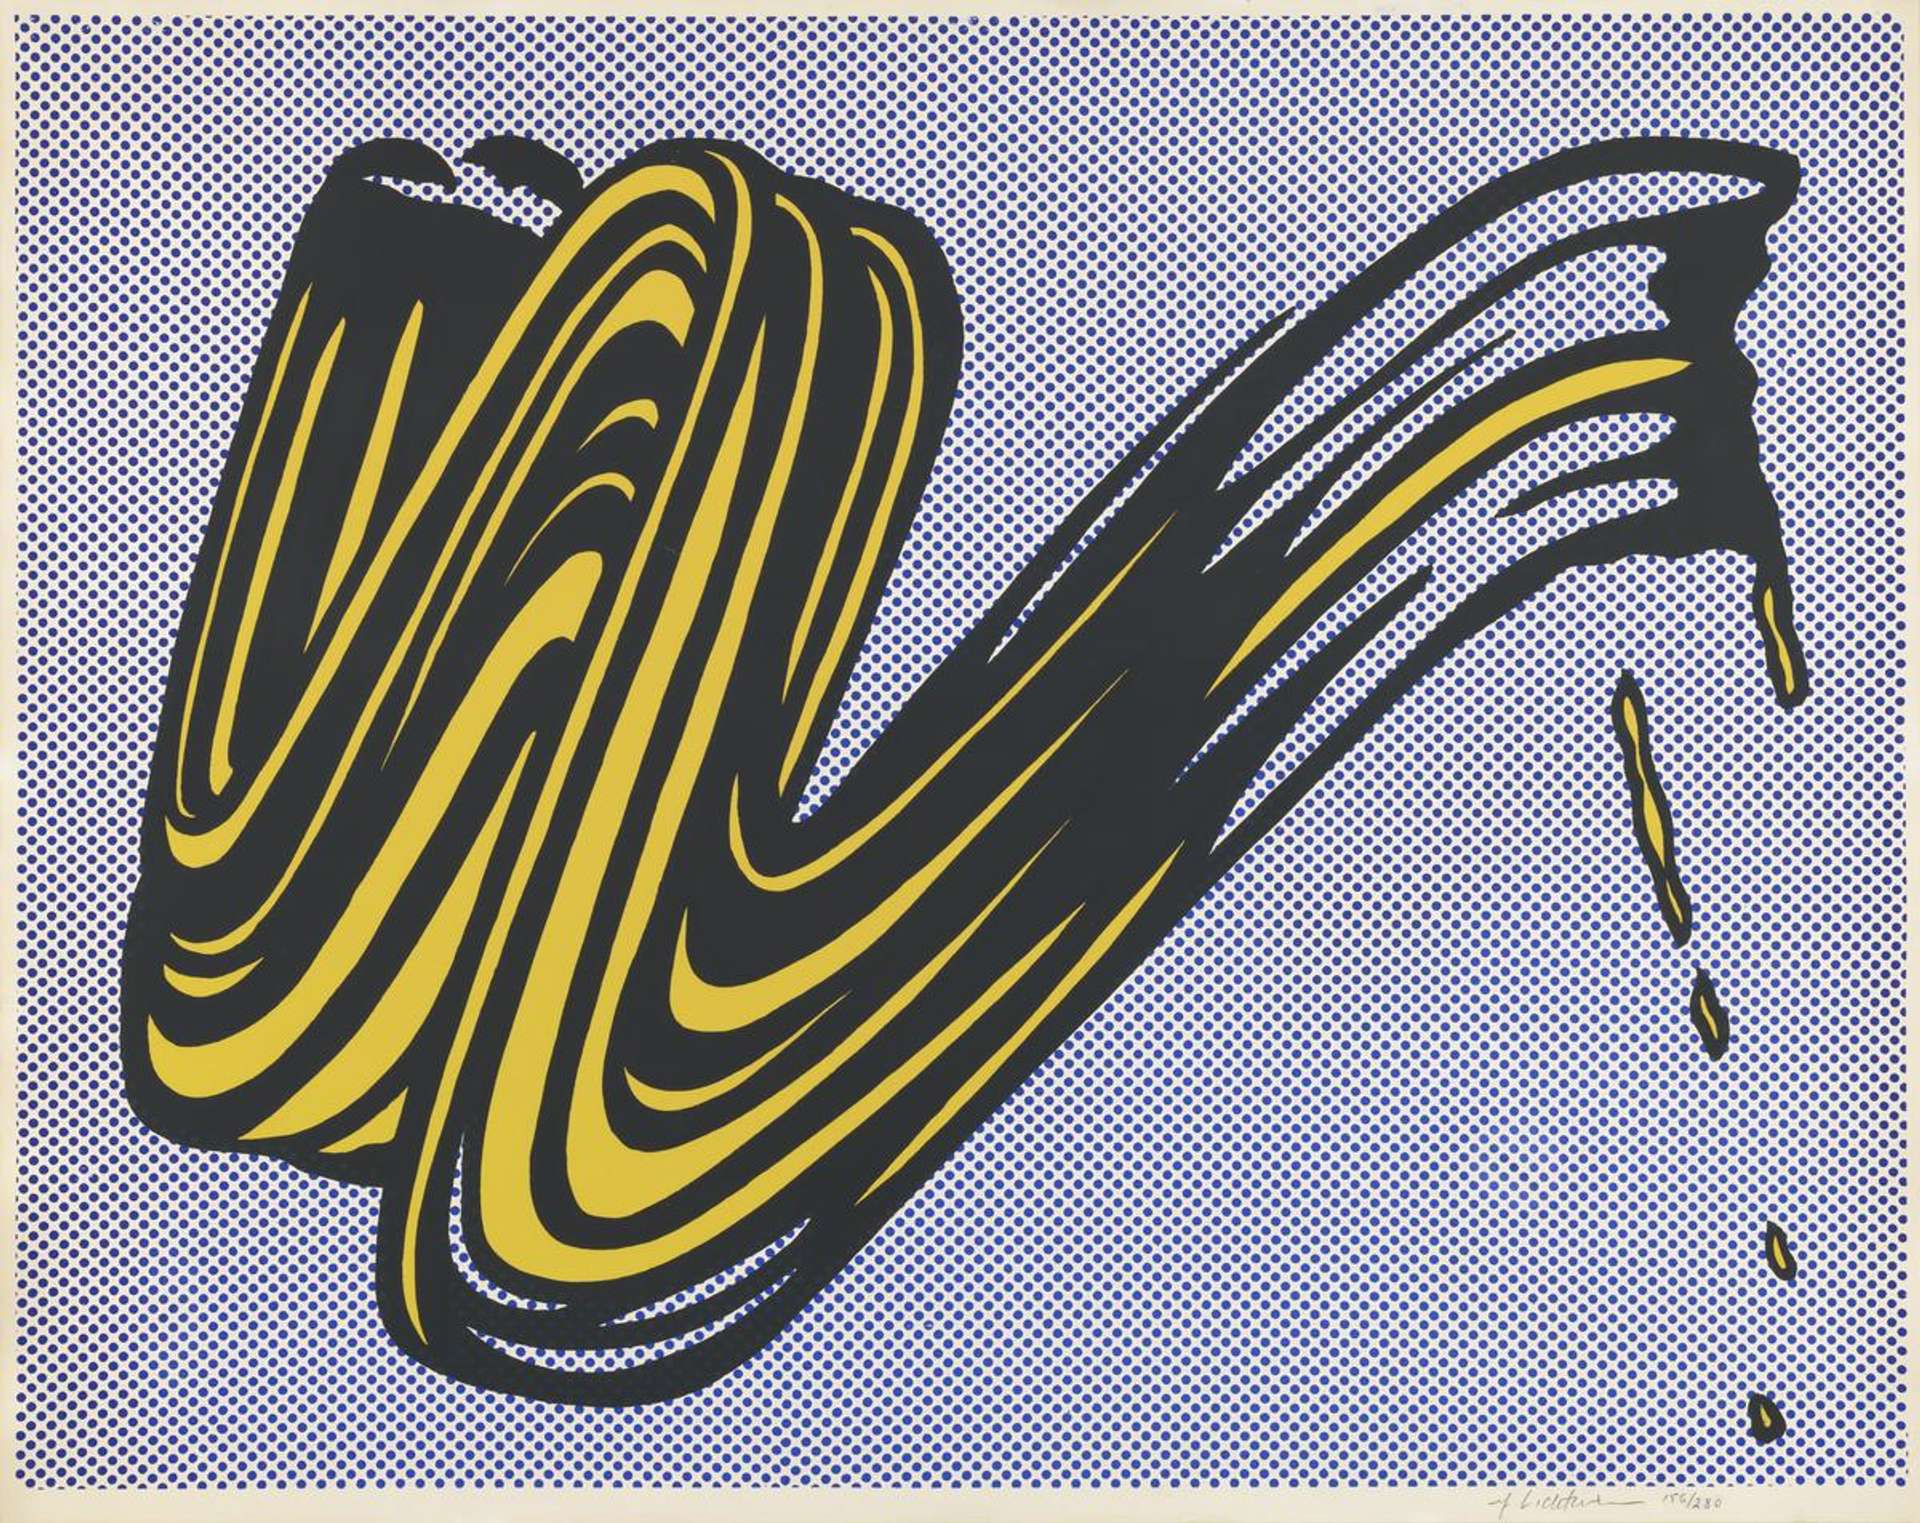 Roy Lichtenstein's Brushstrokes 